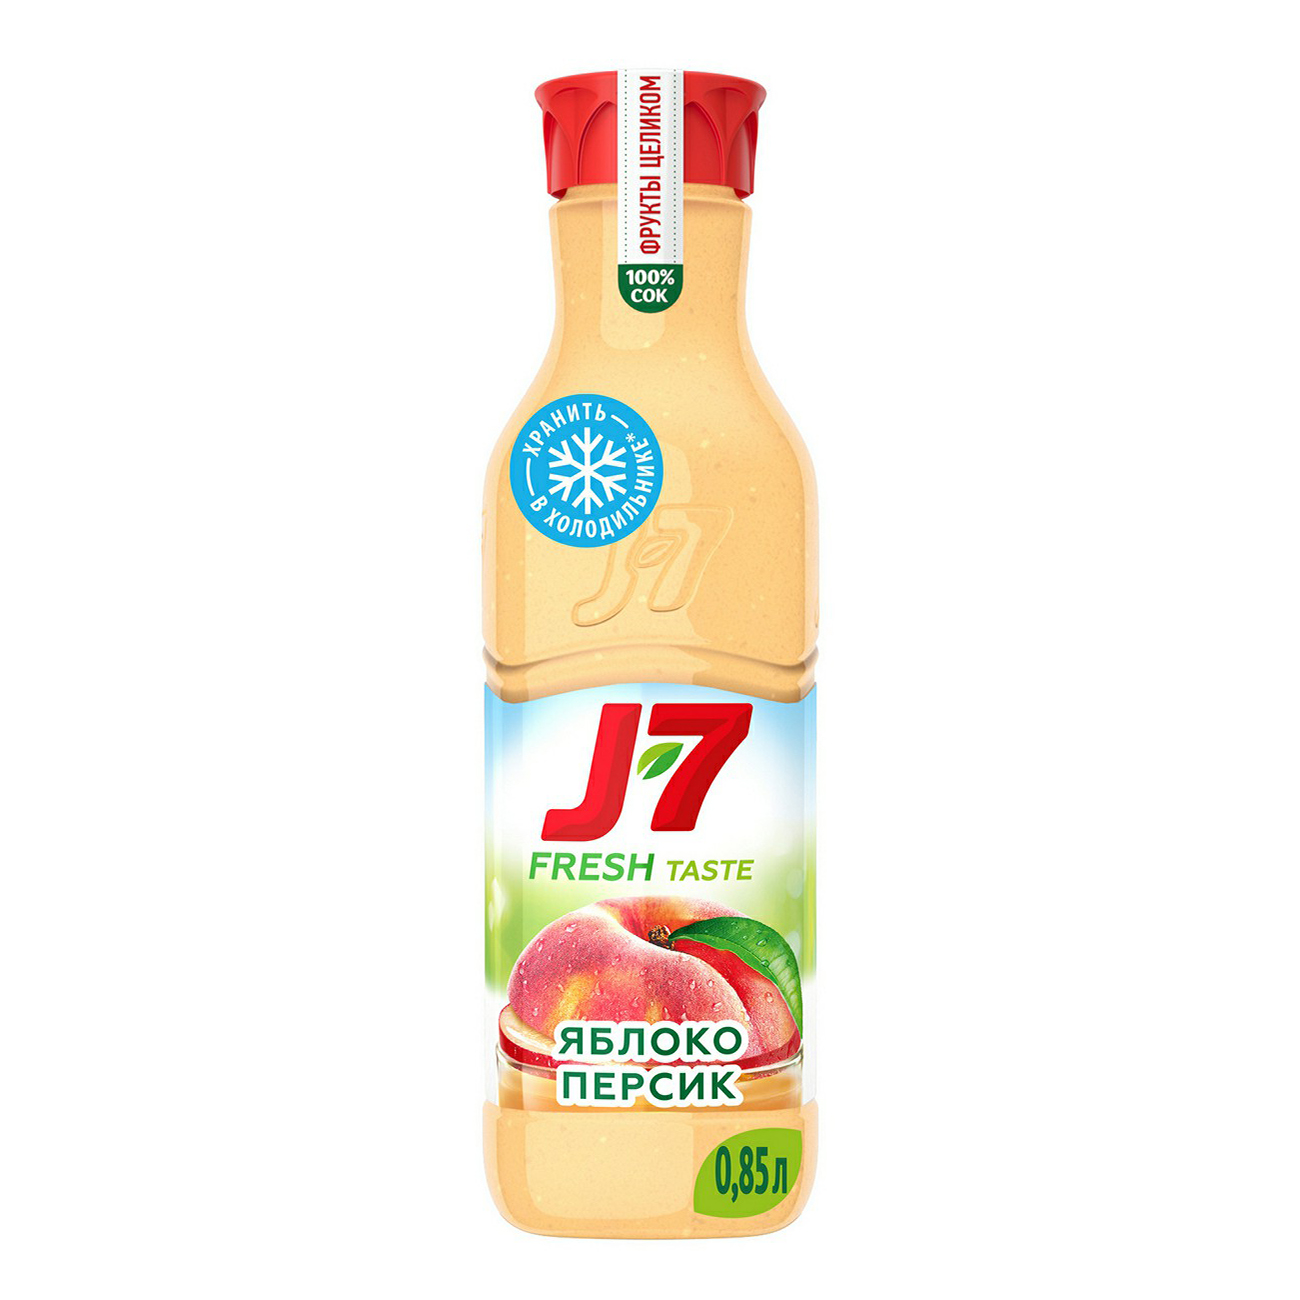 J7 Fresh taste апельсин. J7 Fresh taste сок мультифрукт с мякотью 0.85л. J7 Фреш персик яблоко. Сок j7 850мл.